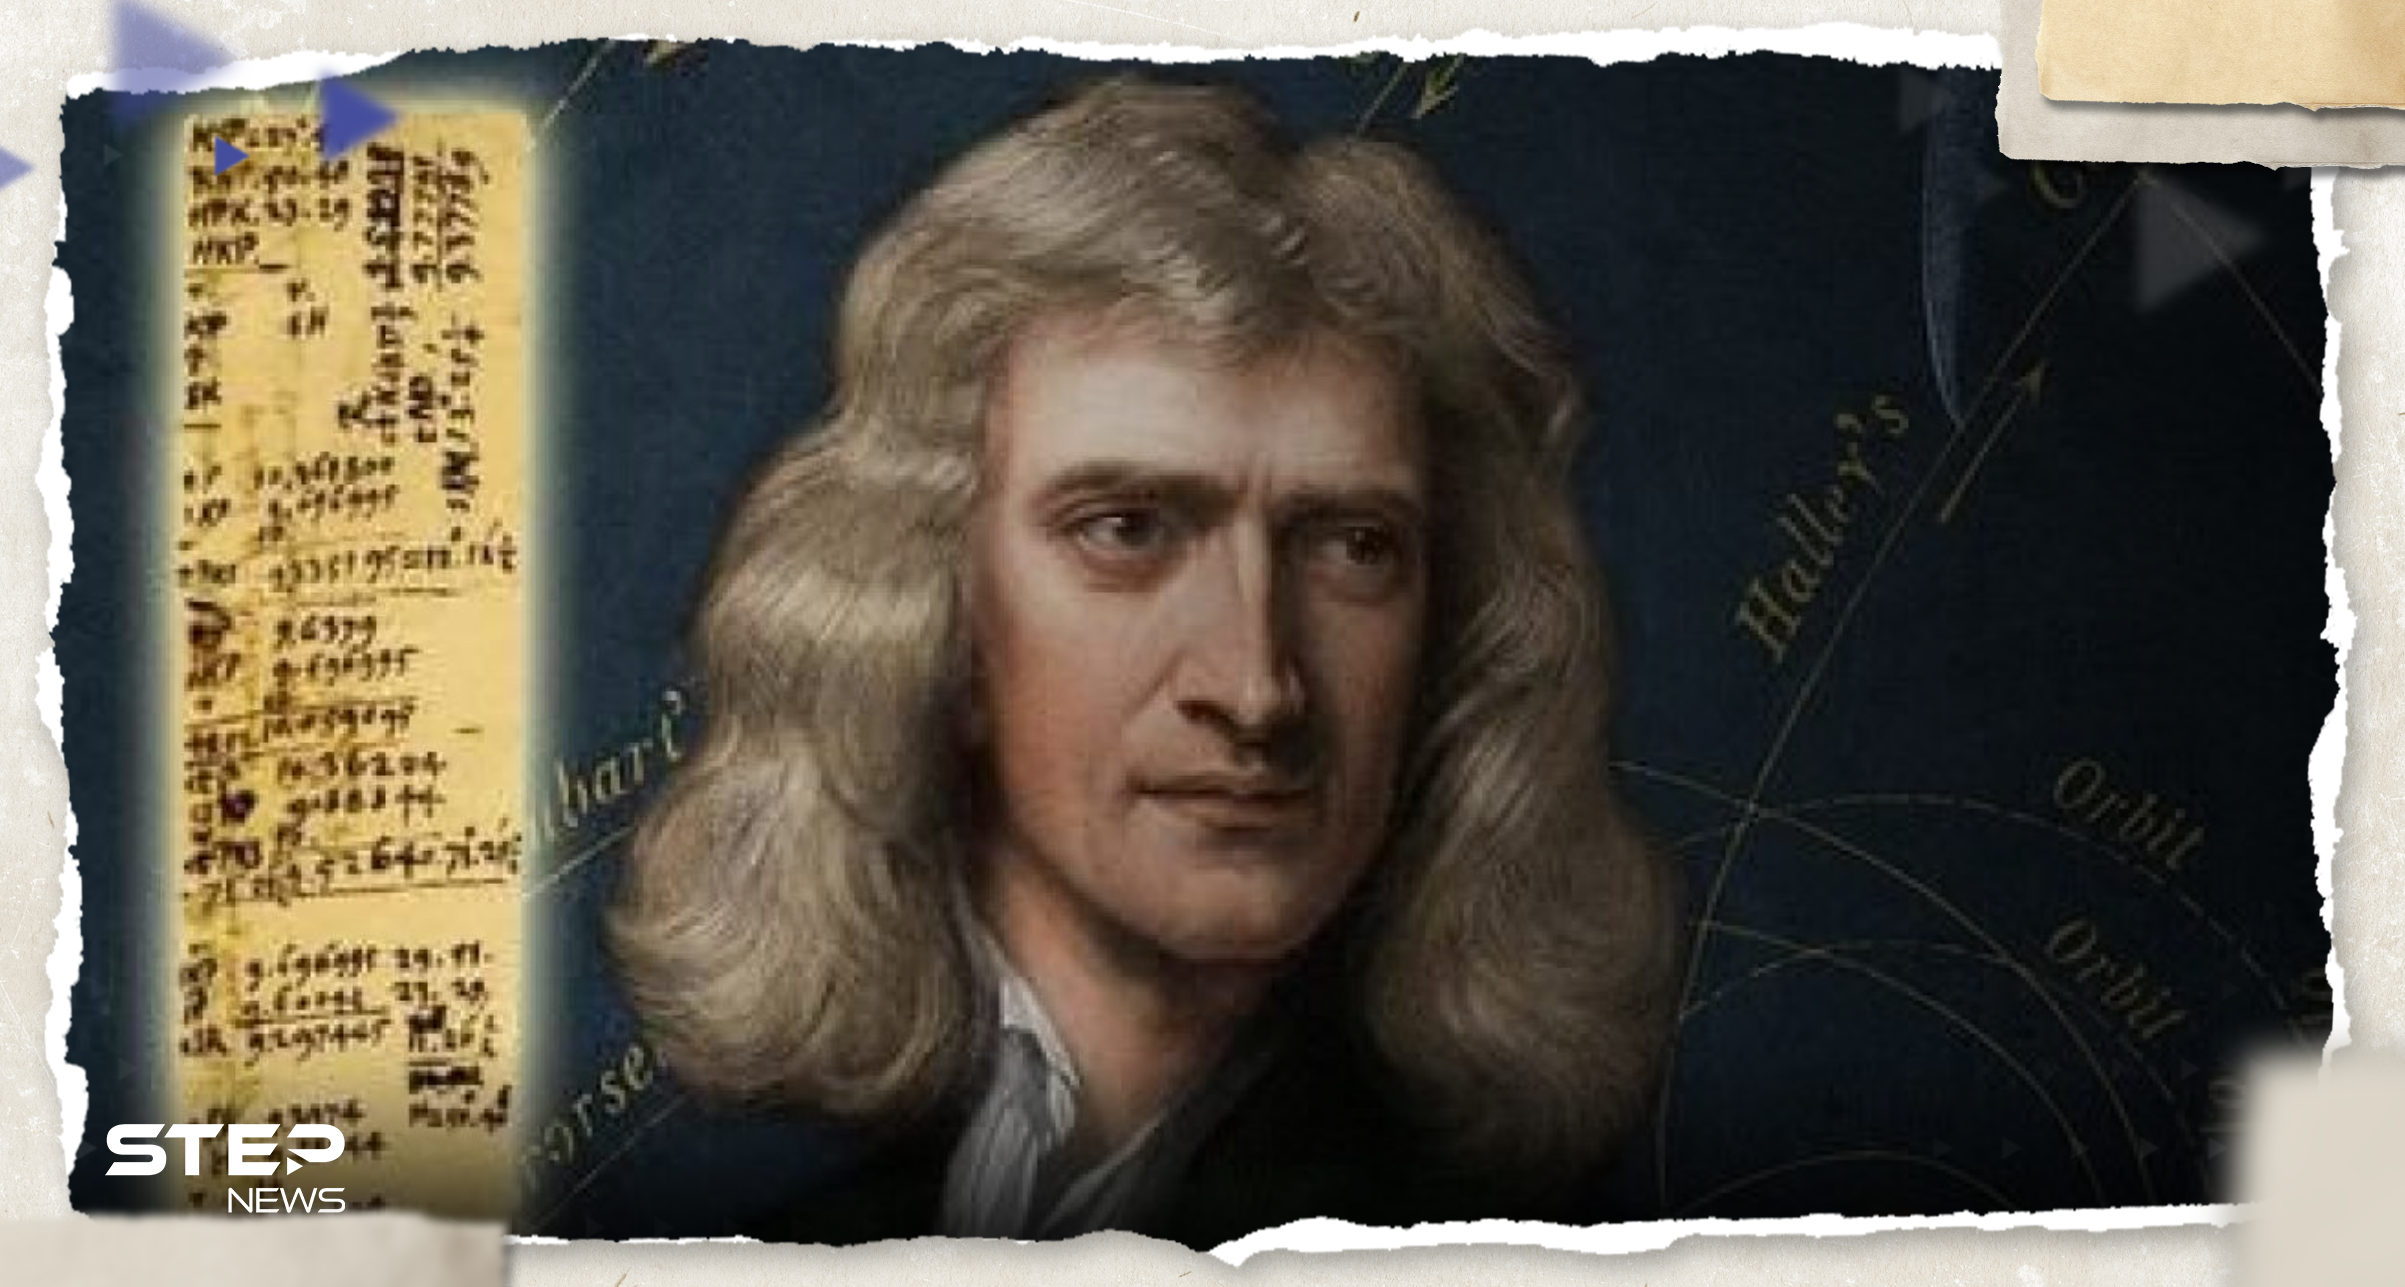 علماء أمريكيون يتحدثون عن "خطأ مخفي" في تفسير قانون نيوتن منذ 300 عام